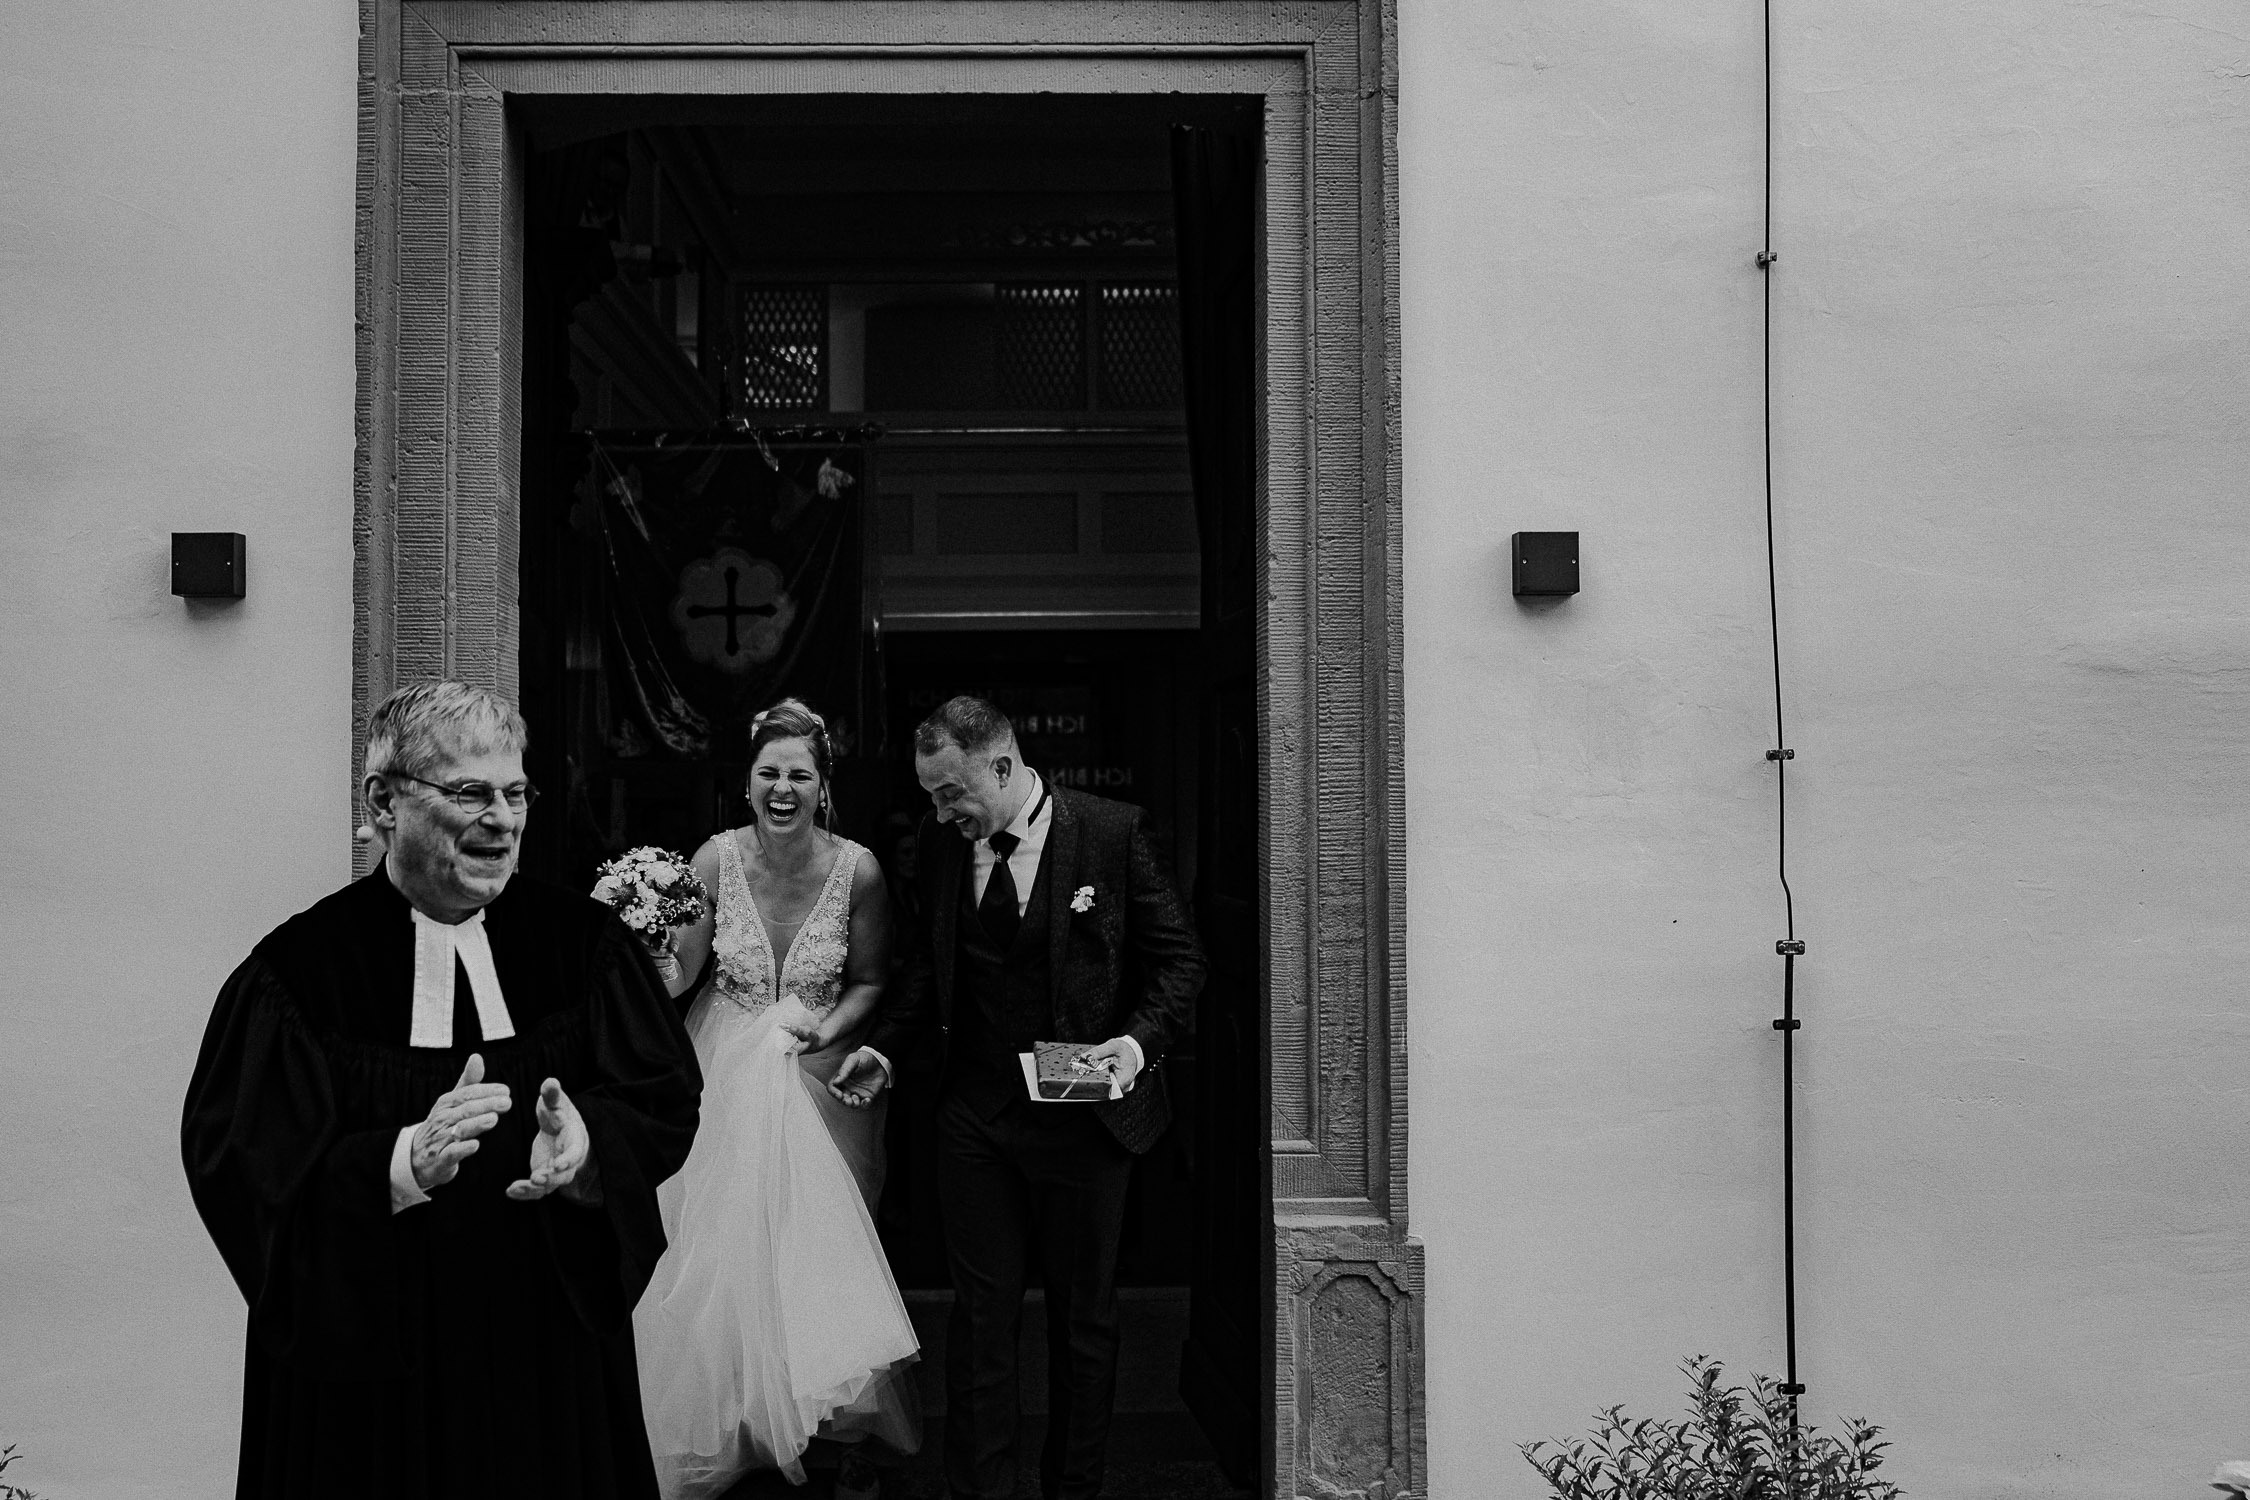 Hochzeitsfotograf aus Wuerzburg. Moderne Hochzeitsfotos und Hochzeitsreportagen